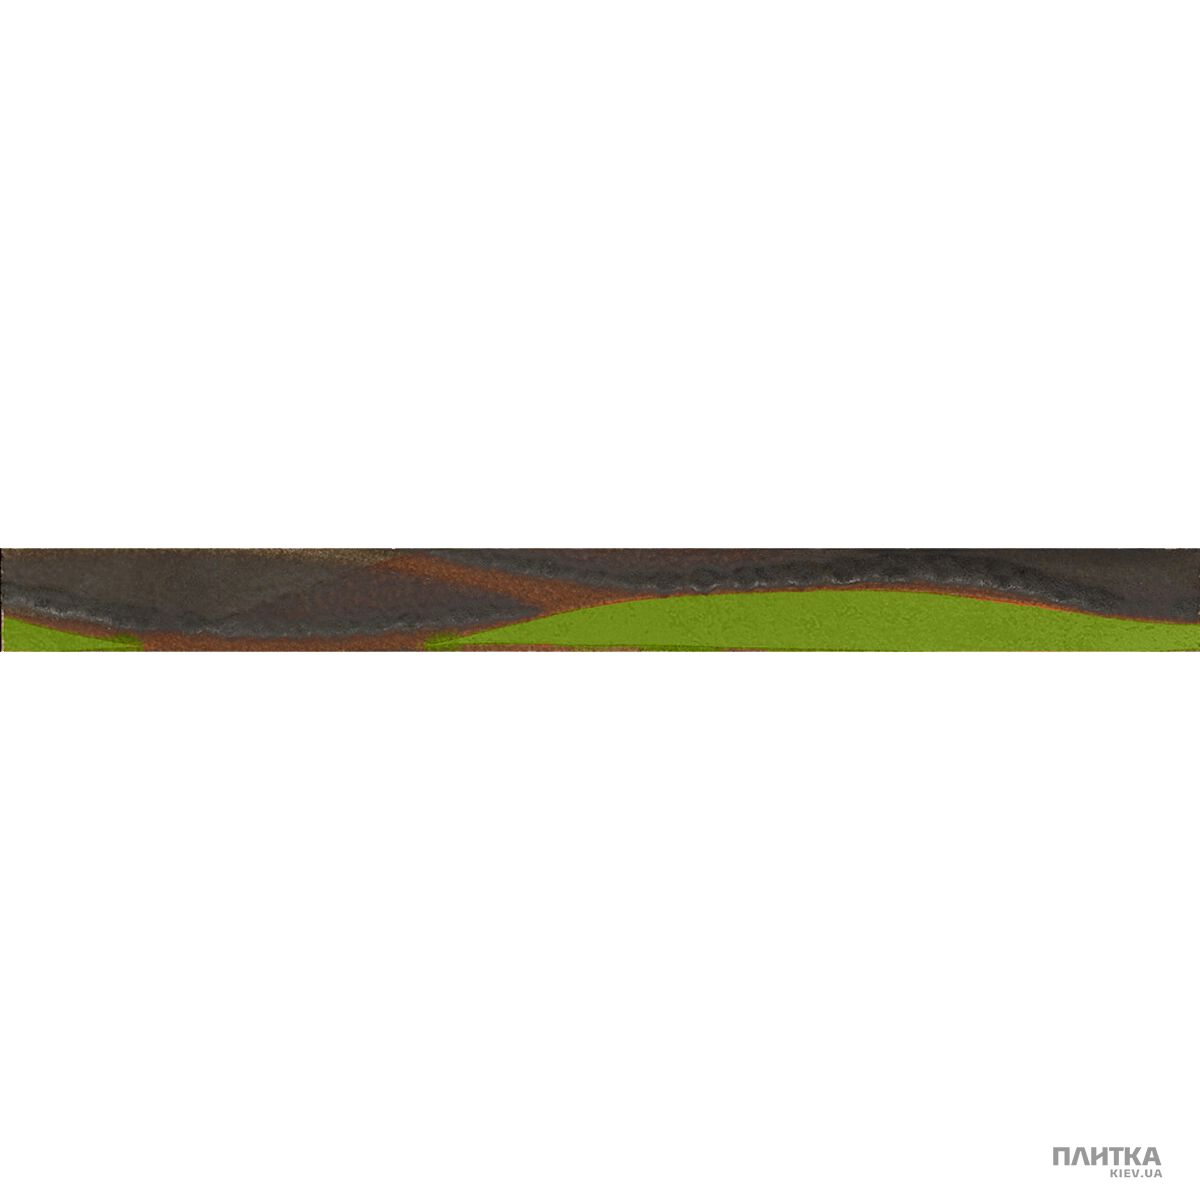 Плитка Imola Nuvole L.VENTO V MIX фриз коричневый,салатовый